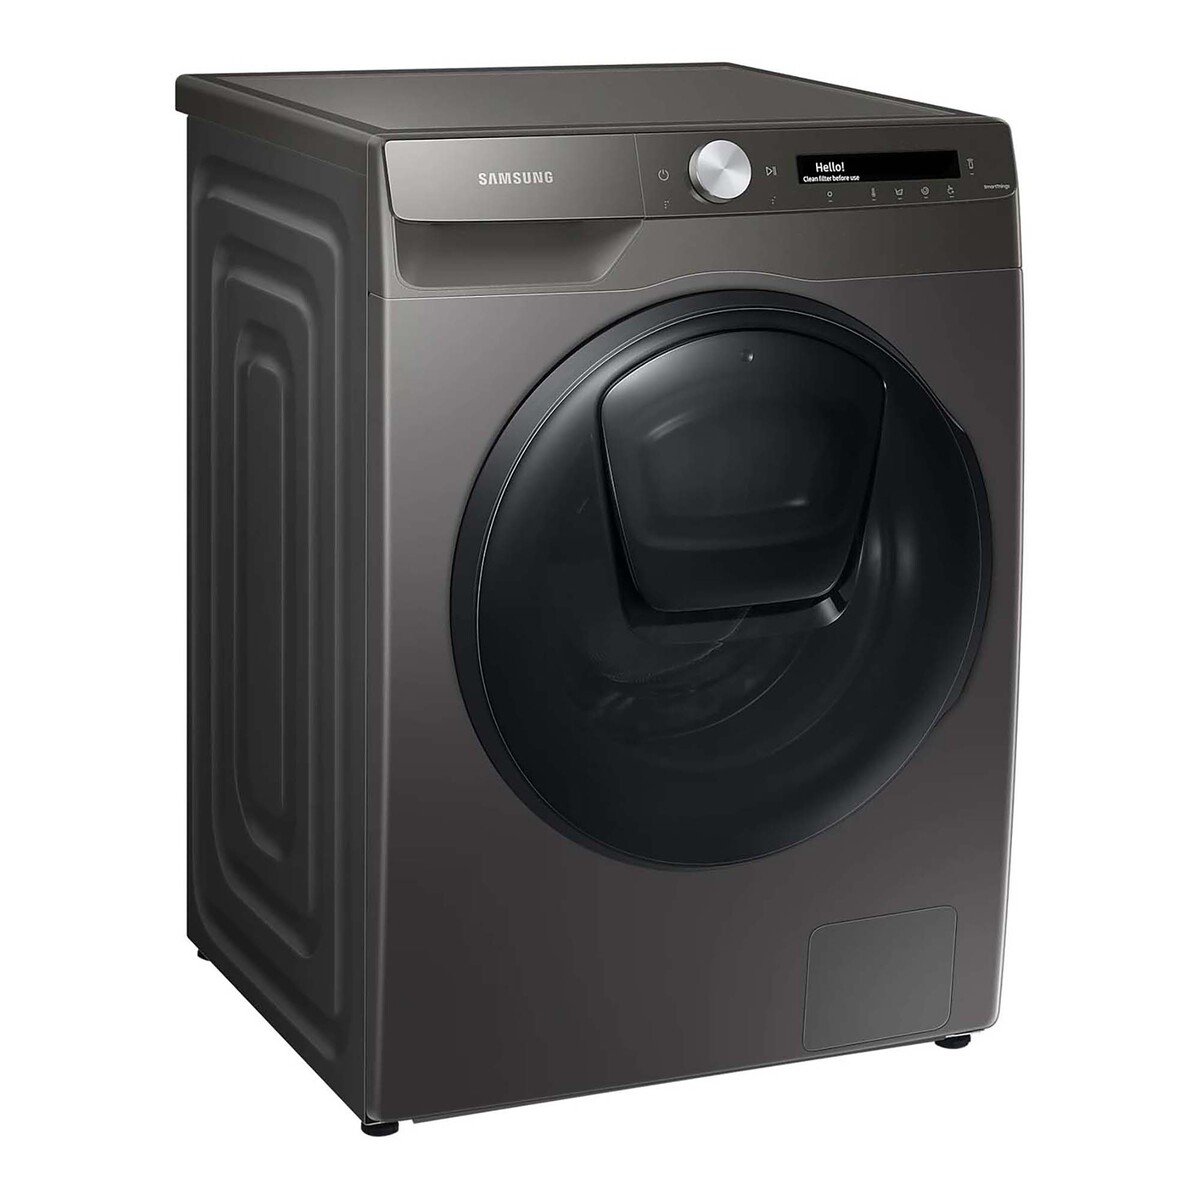 Samsung Front Load Washer & Dryer WD90T554DBN/GU 9/6KG